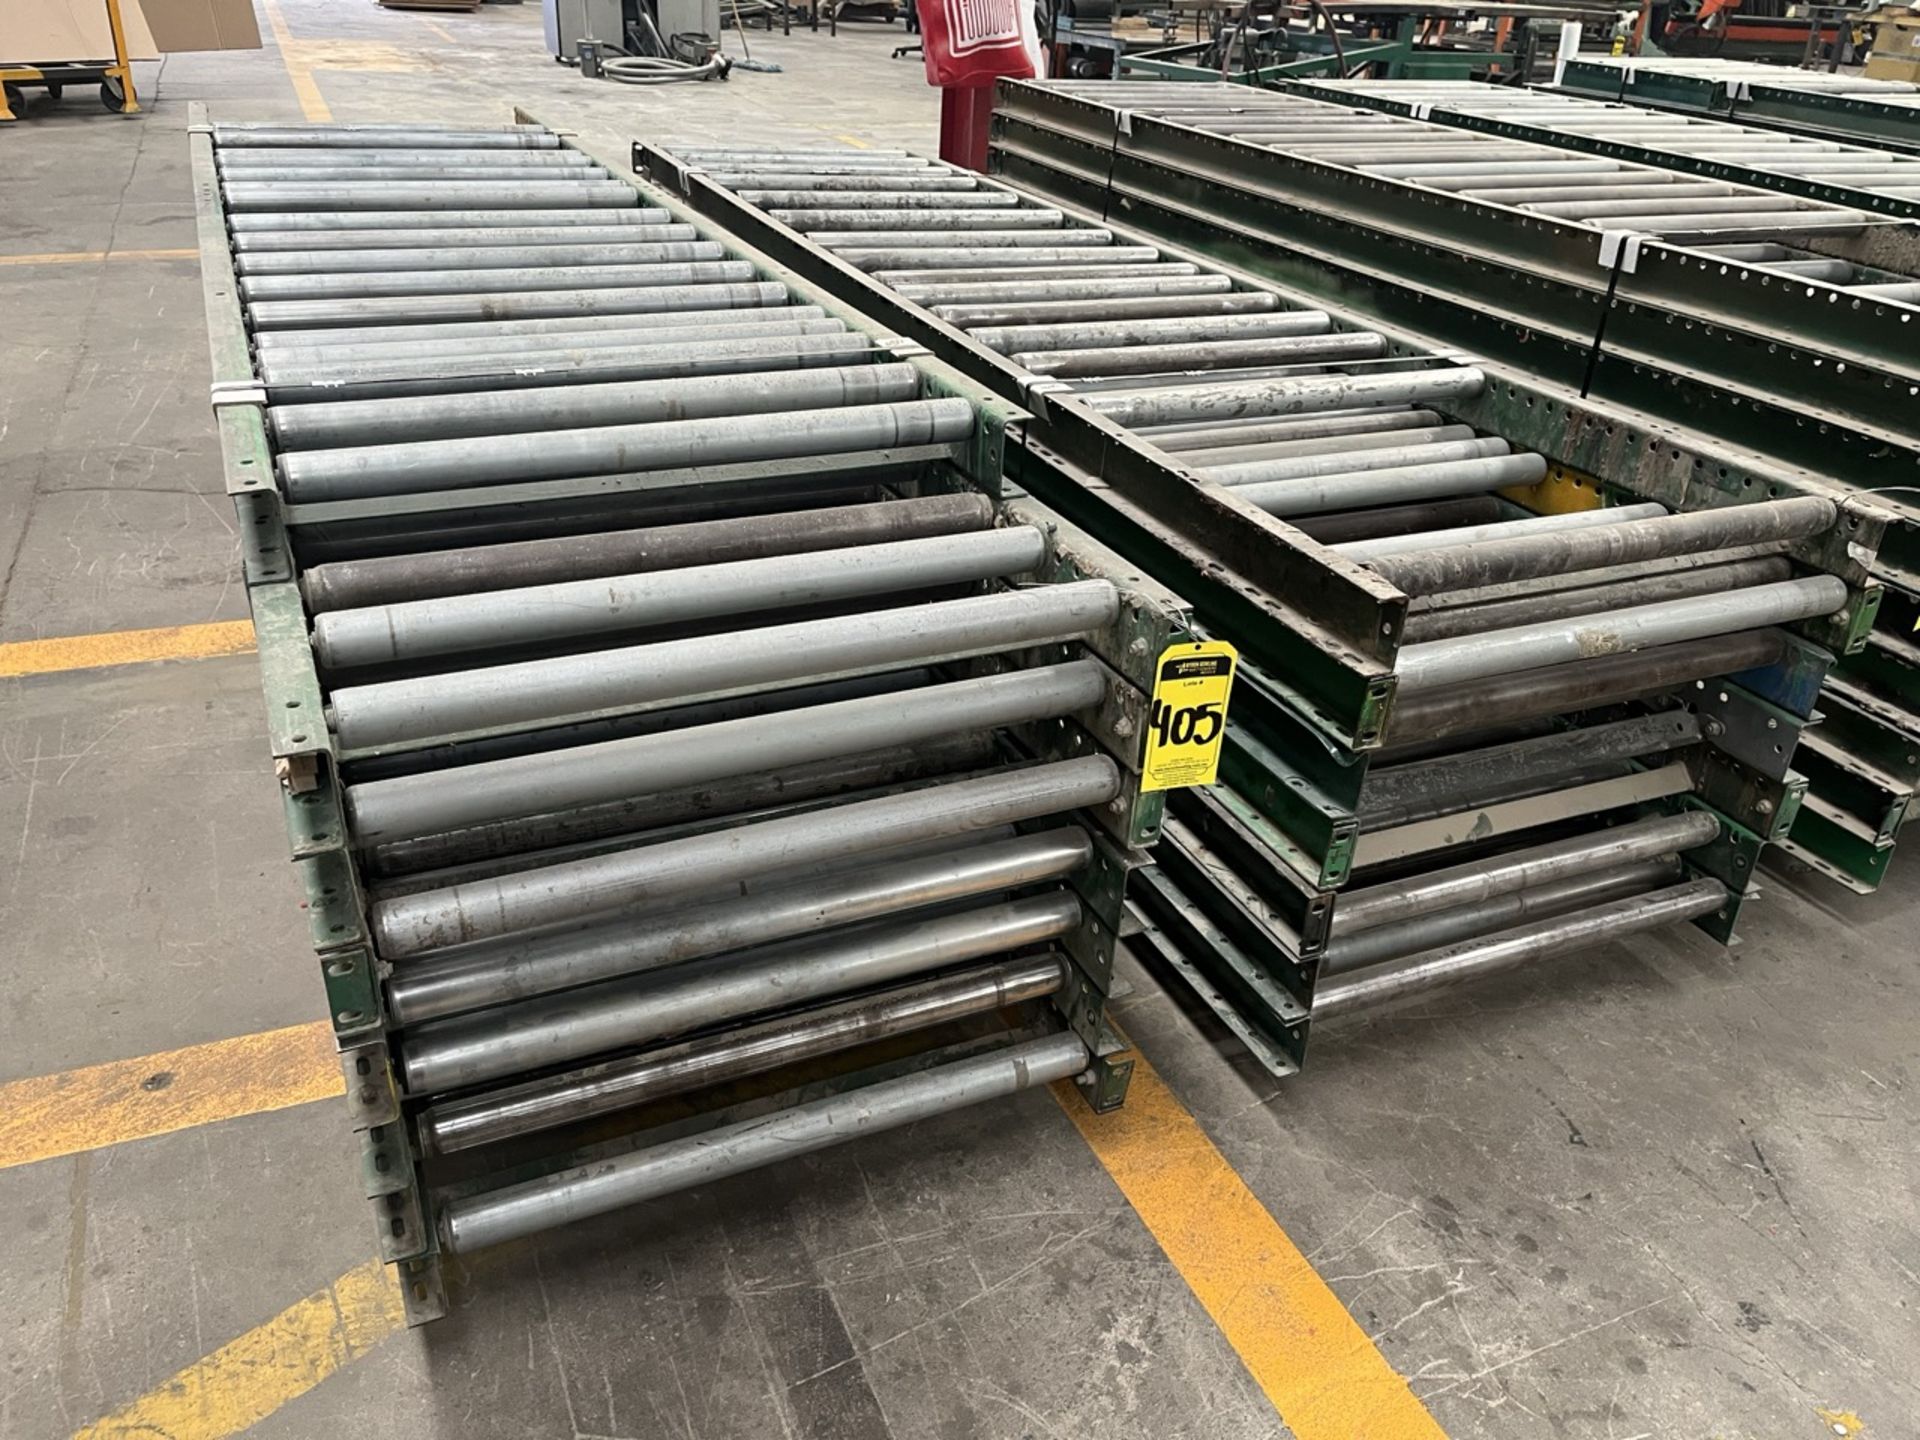 15 pieces of roller conveyor belt measuring approx. 79 cm wide by 3 m long. / 15 Piezas de banda tr - Image 2 of 4